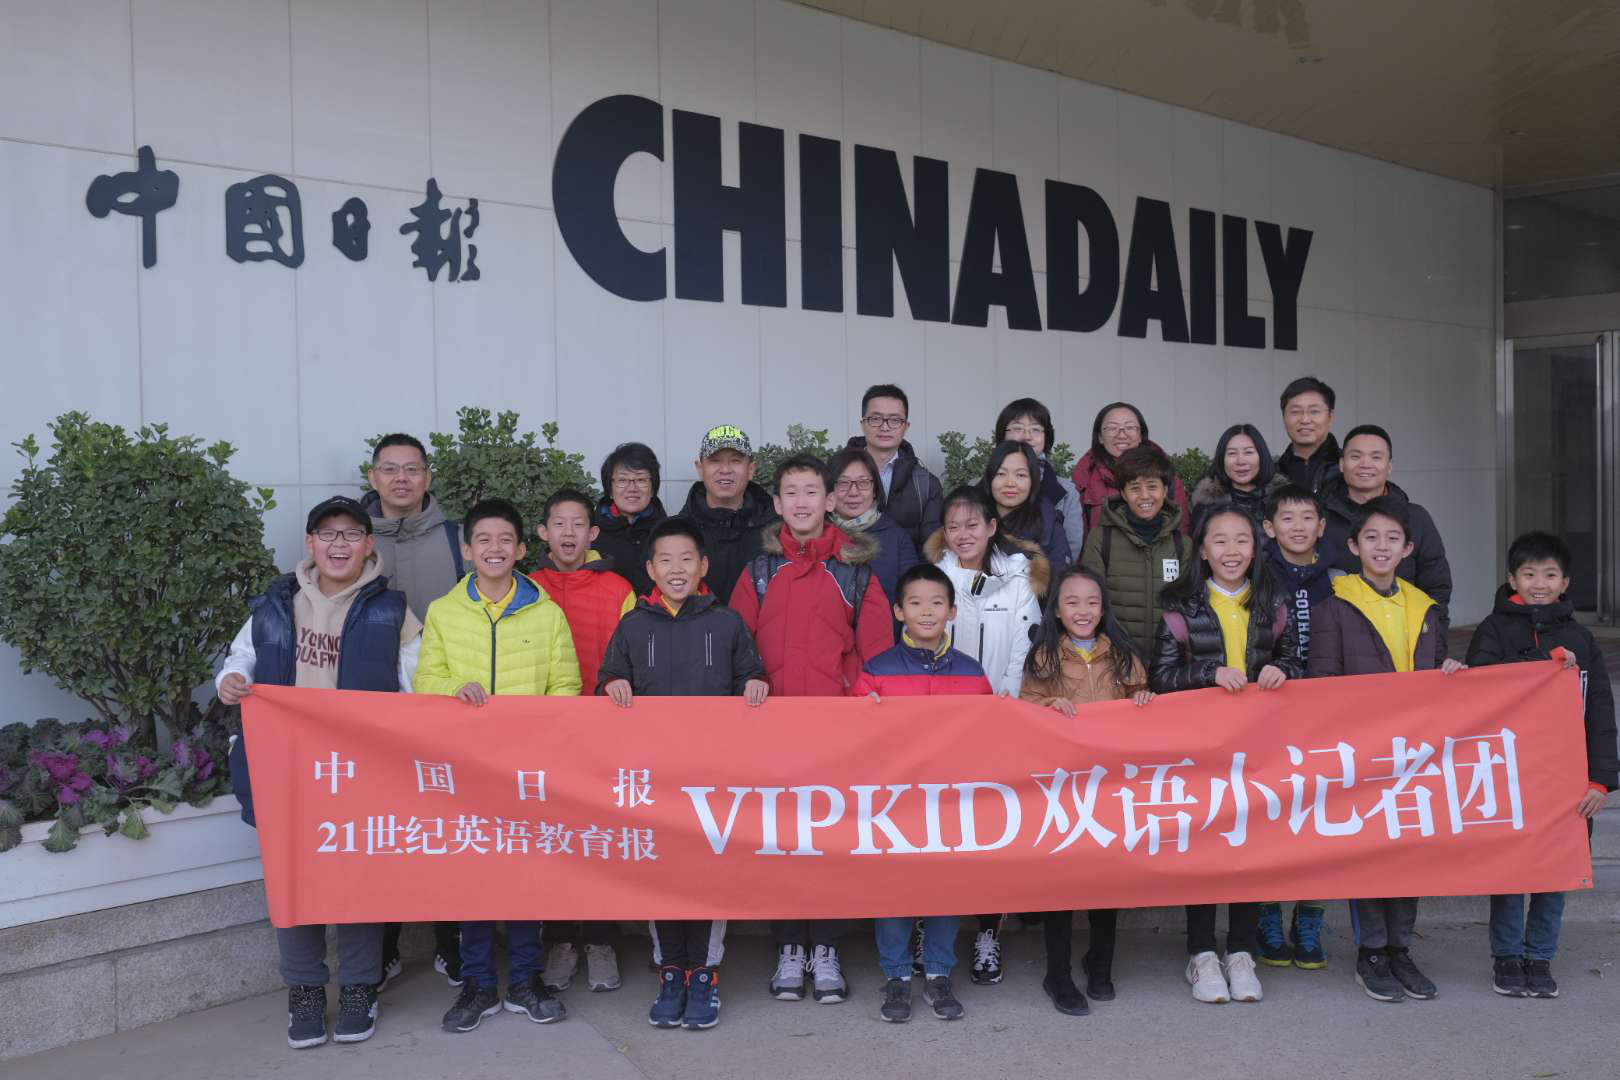 中国日报与在线青少儿教育品牌VVIPKID联合成立 “双语小记者团”